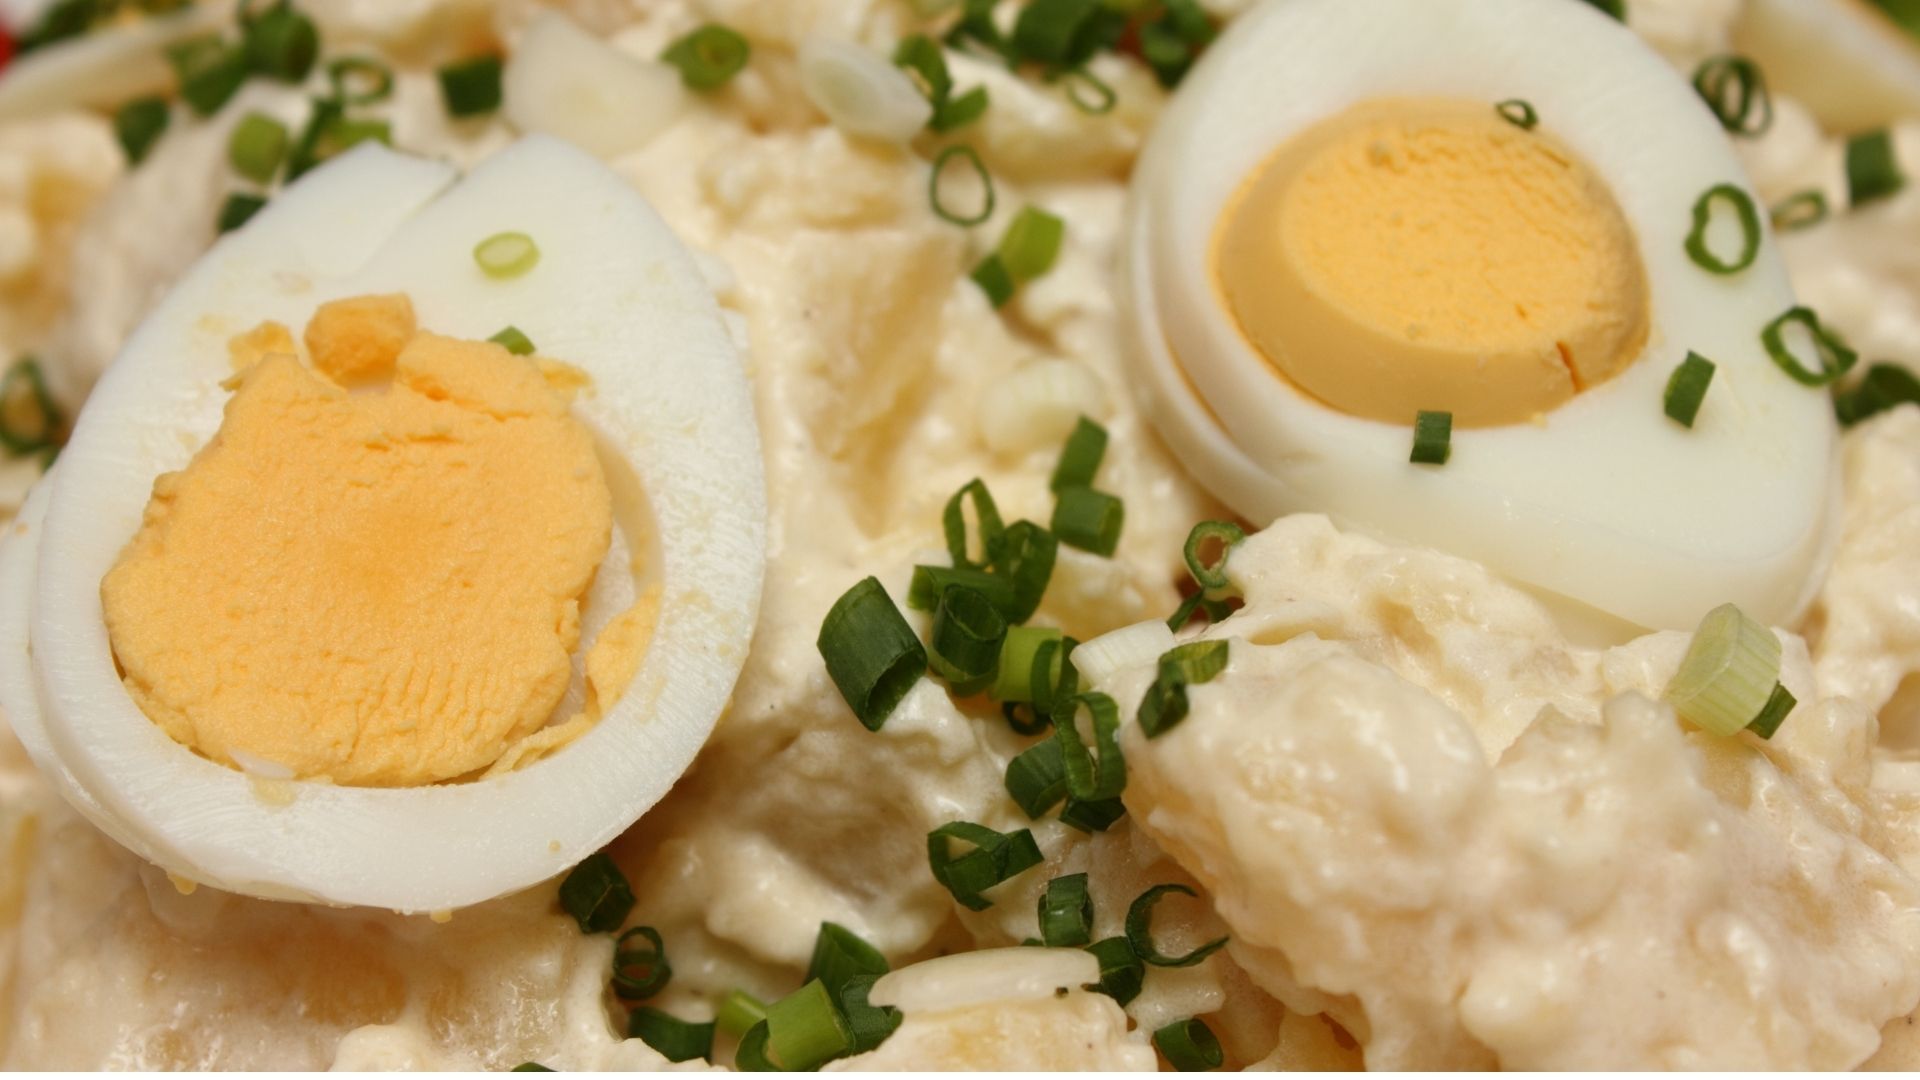 salada de batata com ovos, entrada no almoço (Canva)